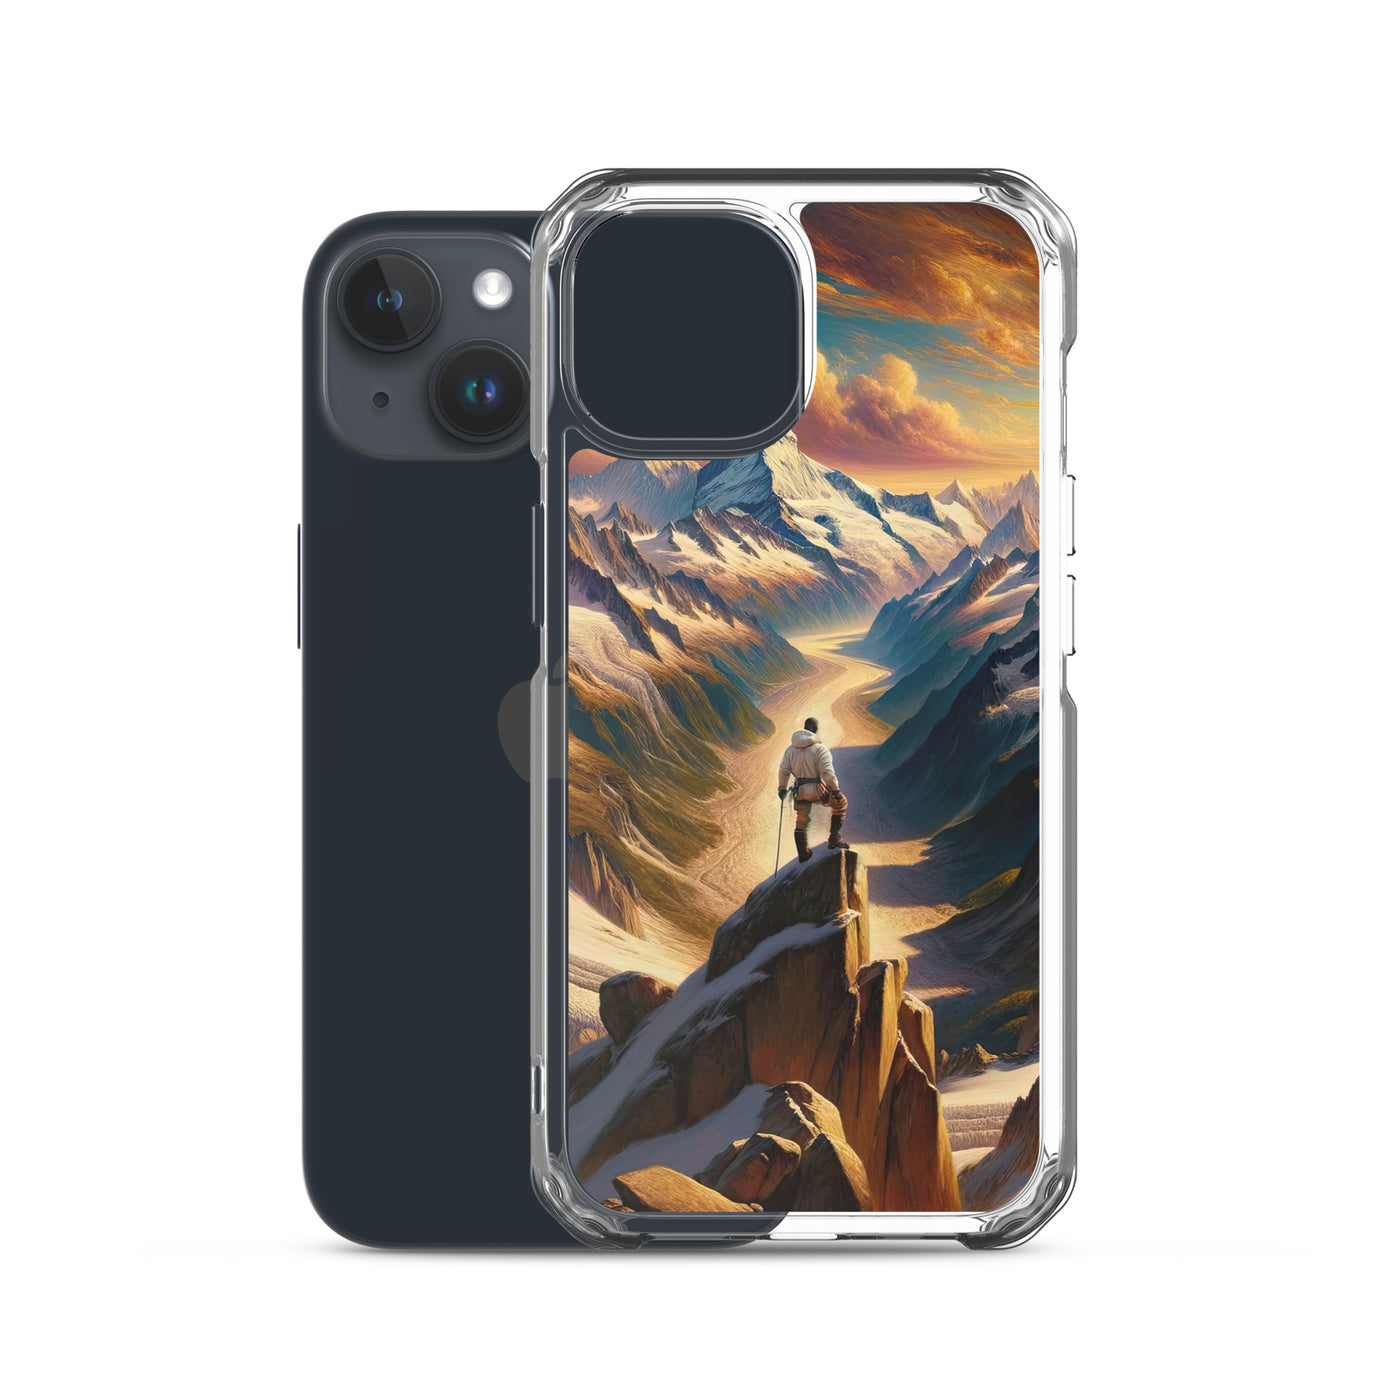 Ölgemälde eines Wanderers auf einem Hügel mit Panoramablick auf schneebedeckte Alpen und goldenen Himmel - iPhone Schutzhülle (durchsichtig) wandern xxx yyy zzz